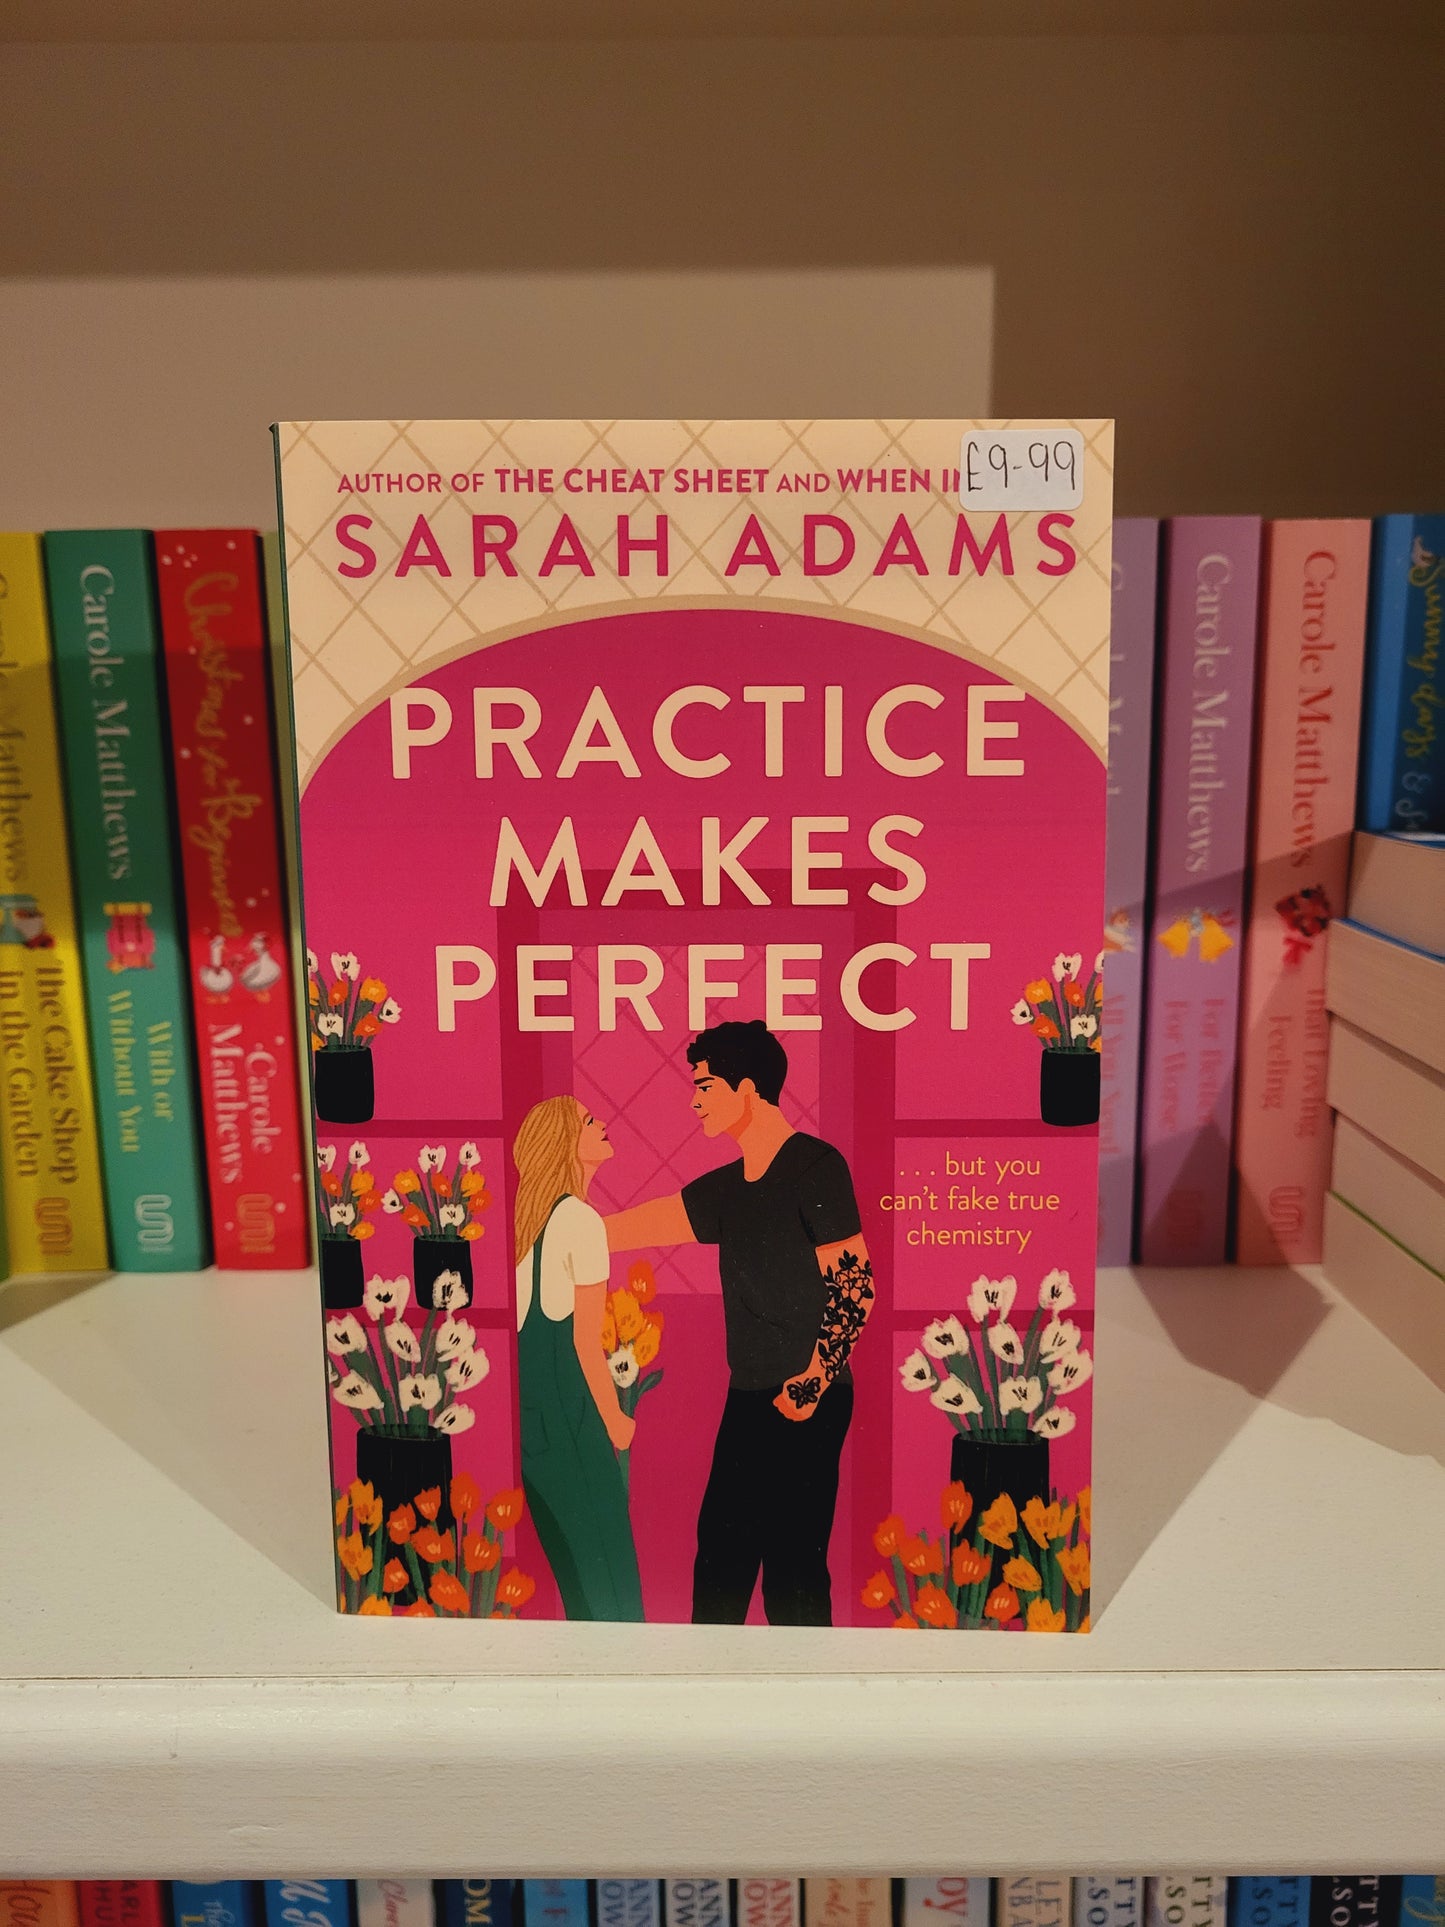 Practice Makes Perfect - Sarah Adams